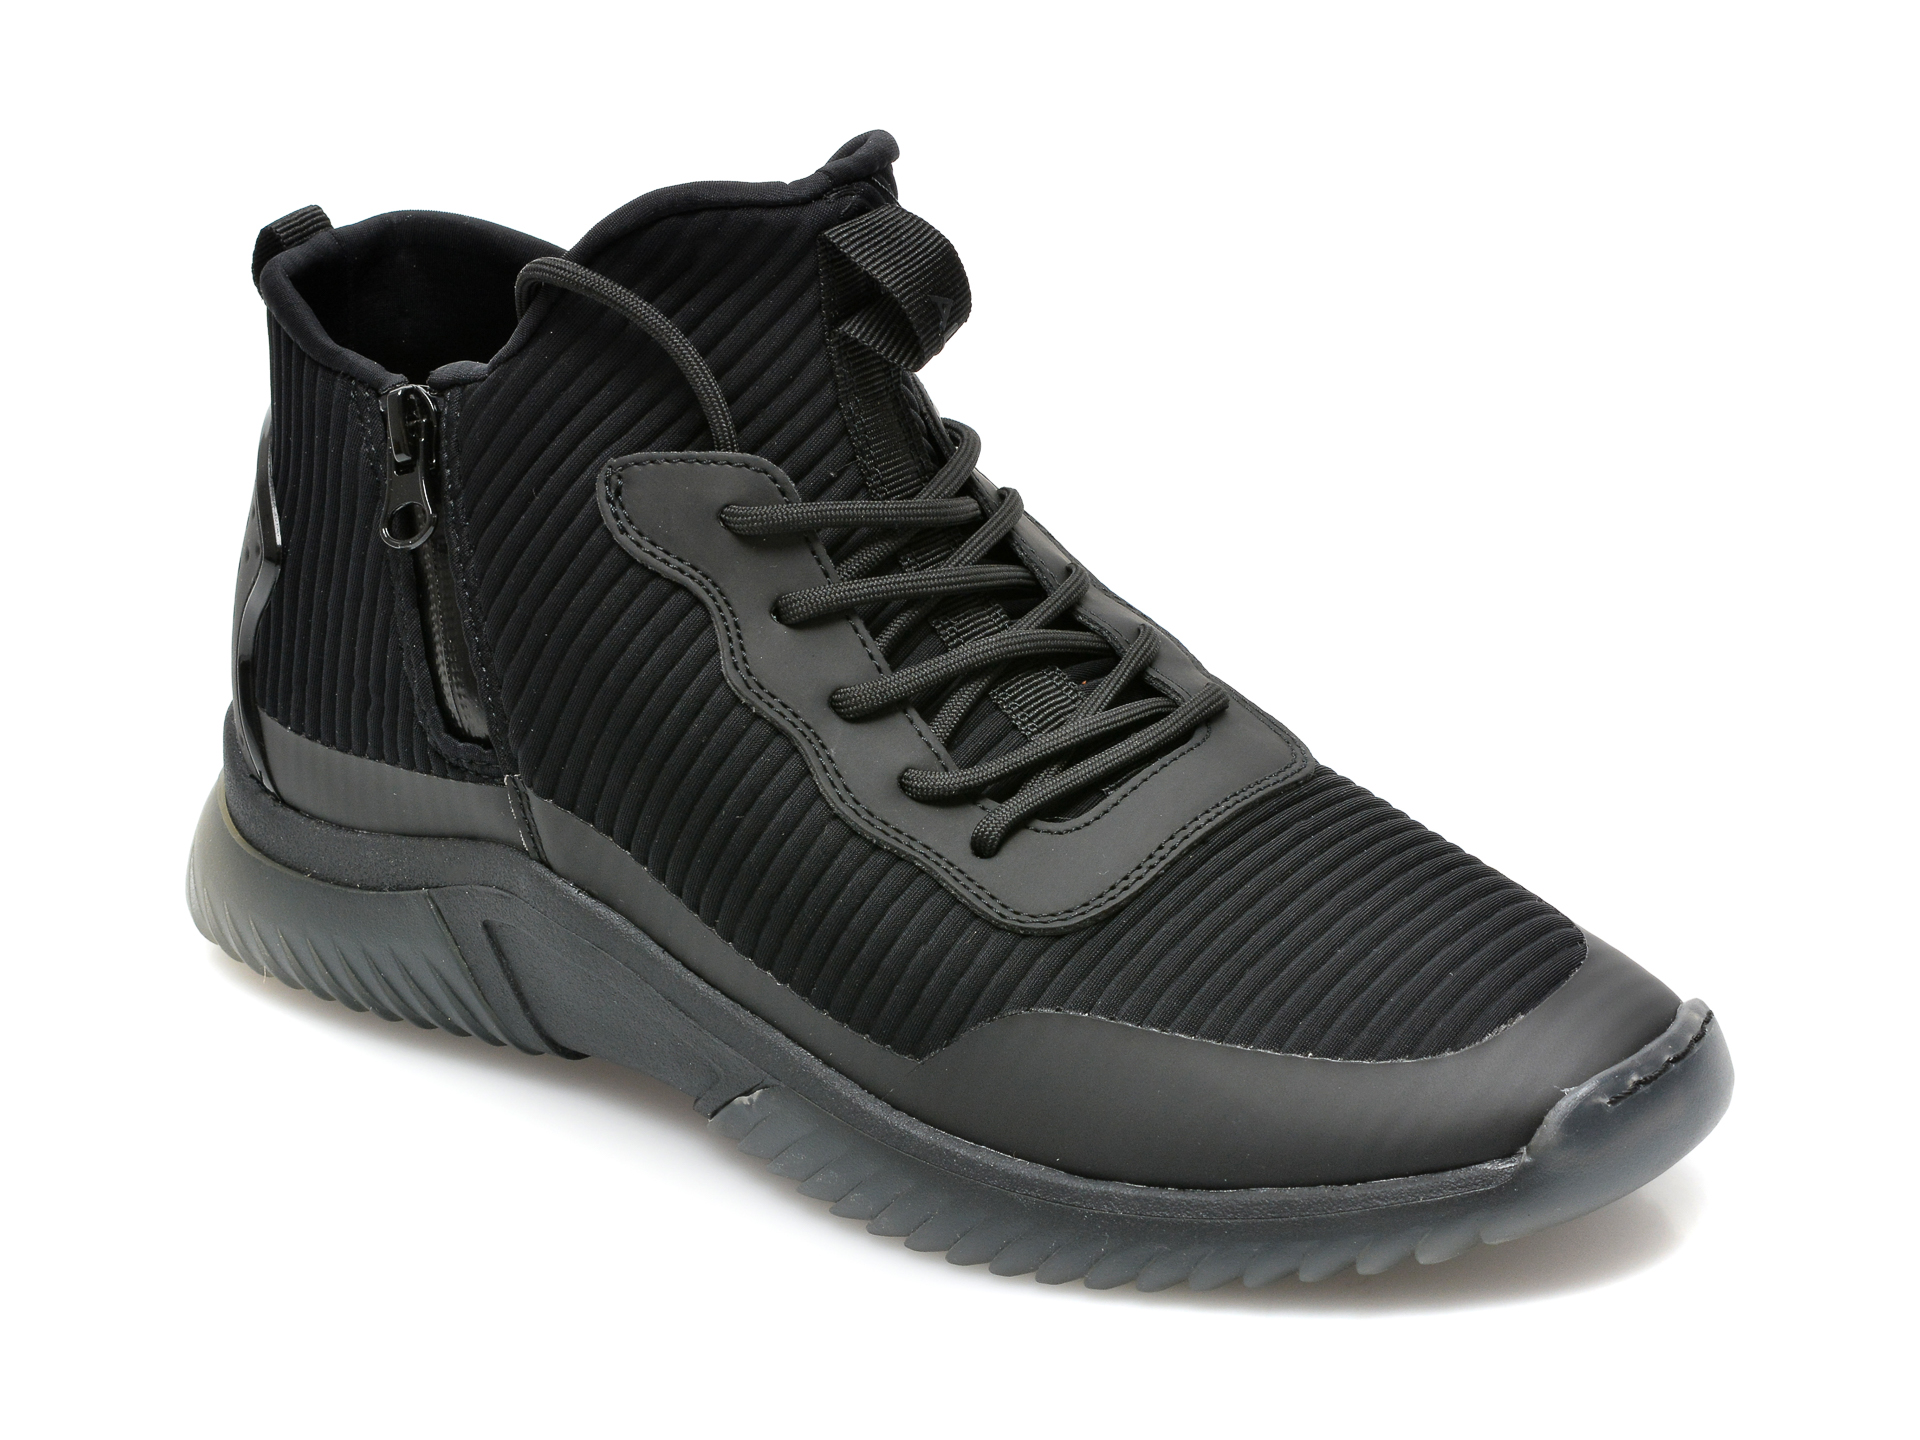 Pantofi sport ALDO negri, Ramsko001, din material textil Aldo